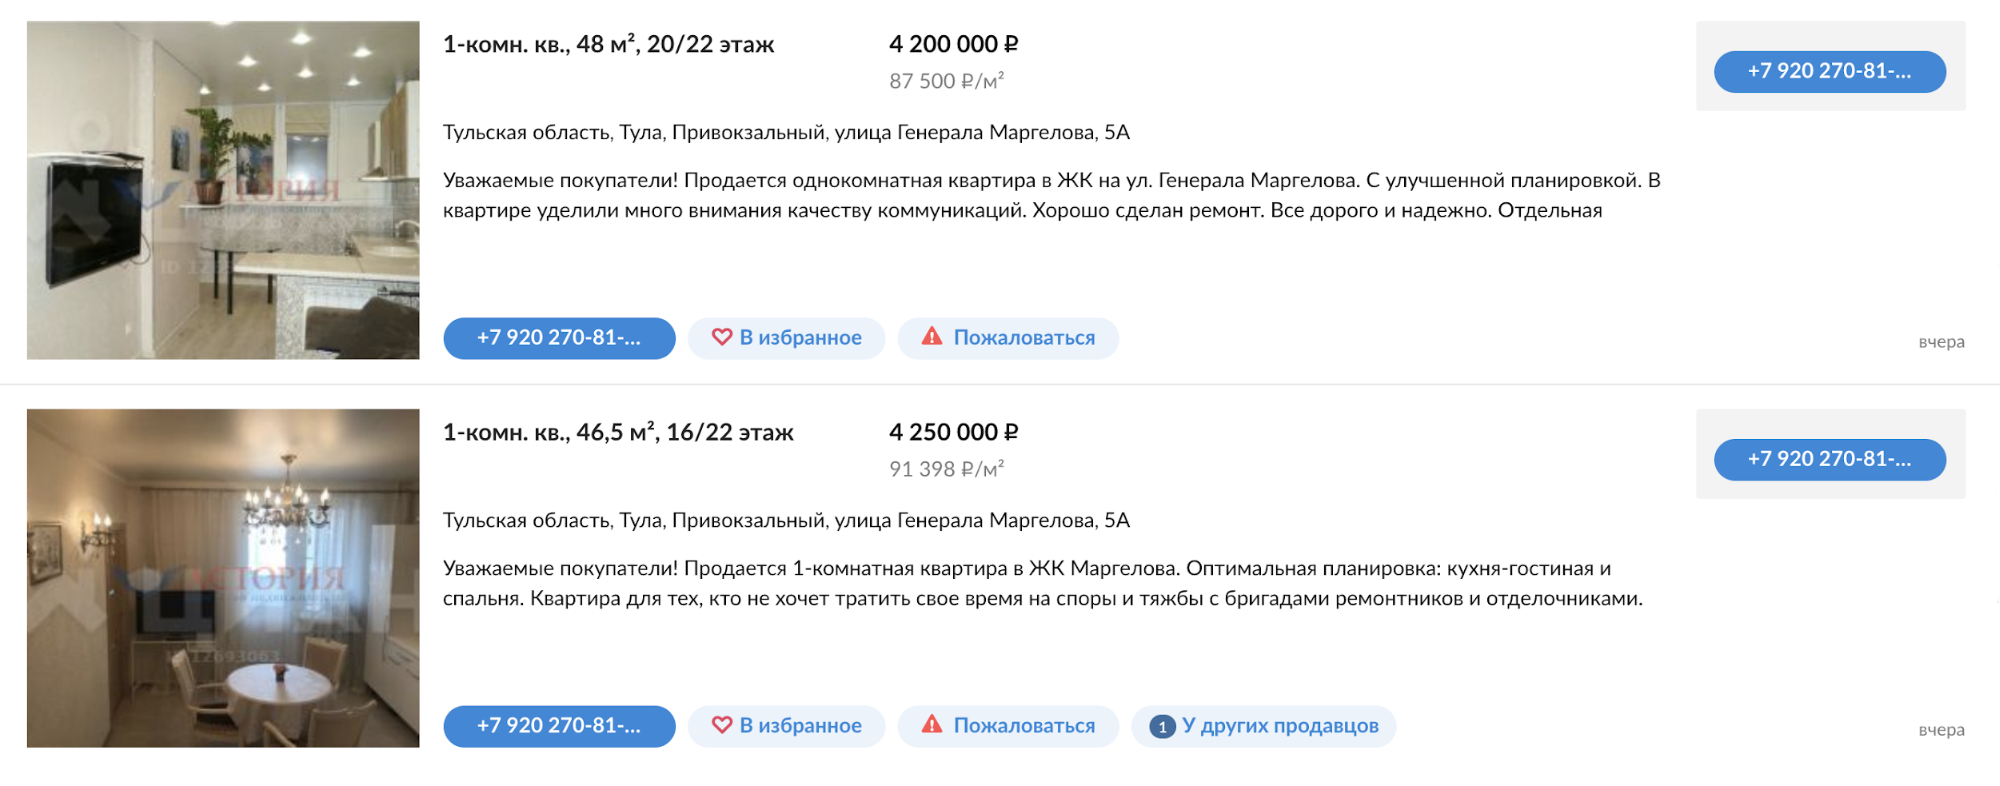 Квартиры в моем доме стоят около 4 млн рублей